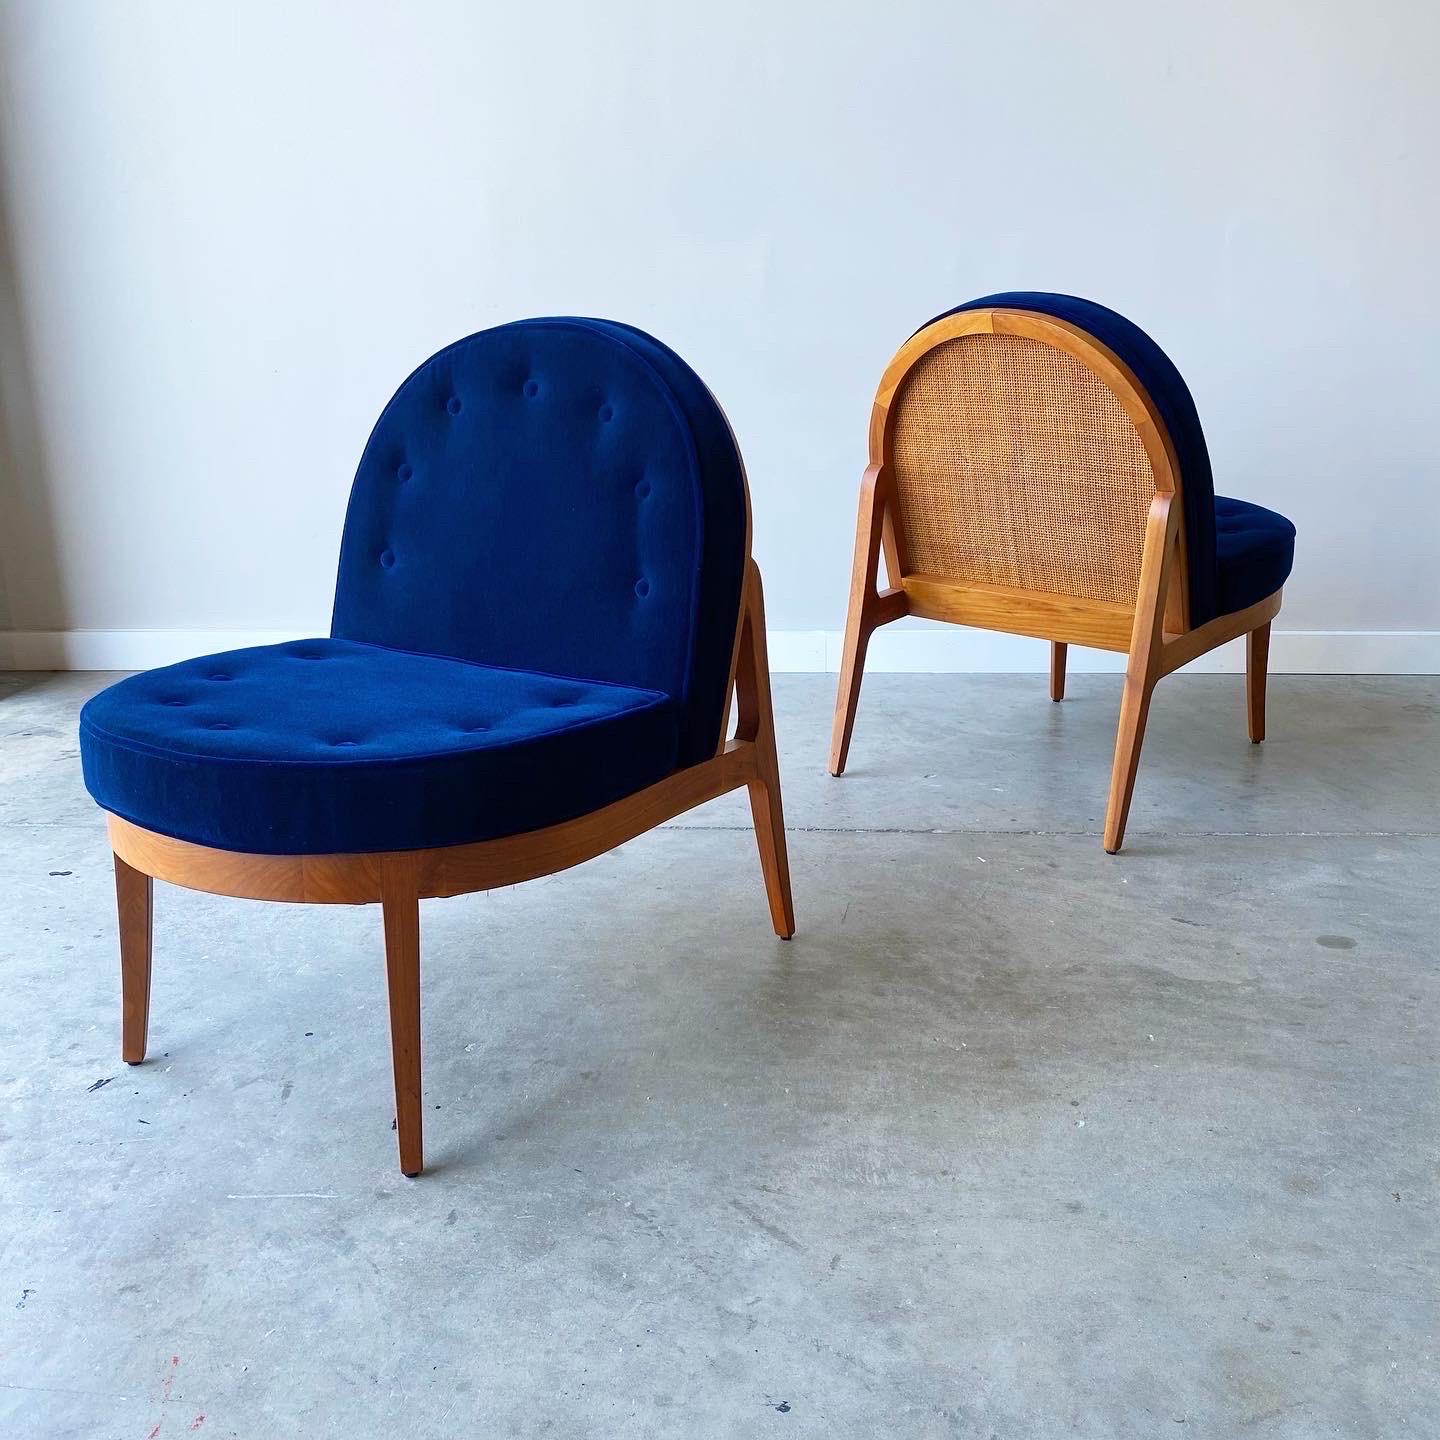 Une superbe paire de chaises longues en noyer. Un cadre sculpté avec un dossier en rotin et un look raffiné : ces meubles sont élégants et modernes. Nouvellement tapissé en mohair.